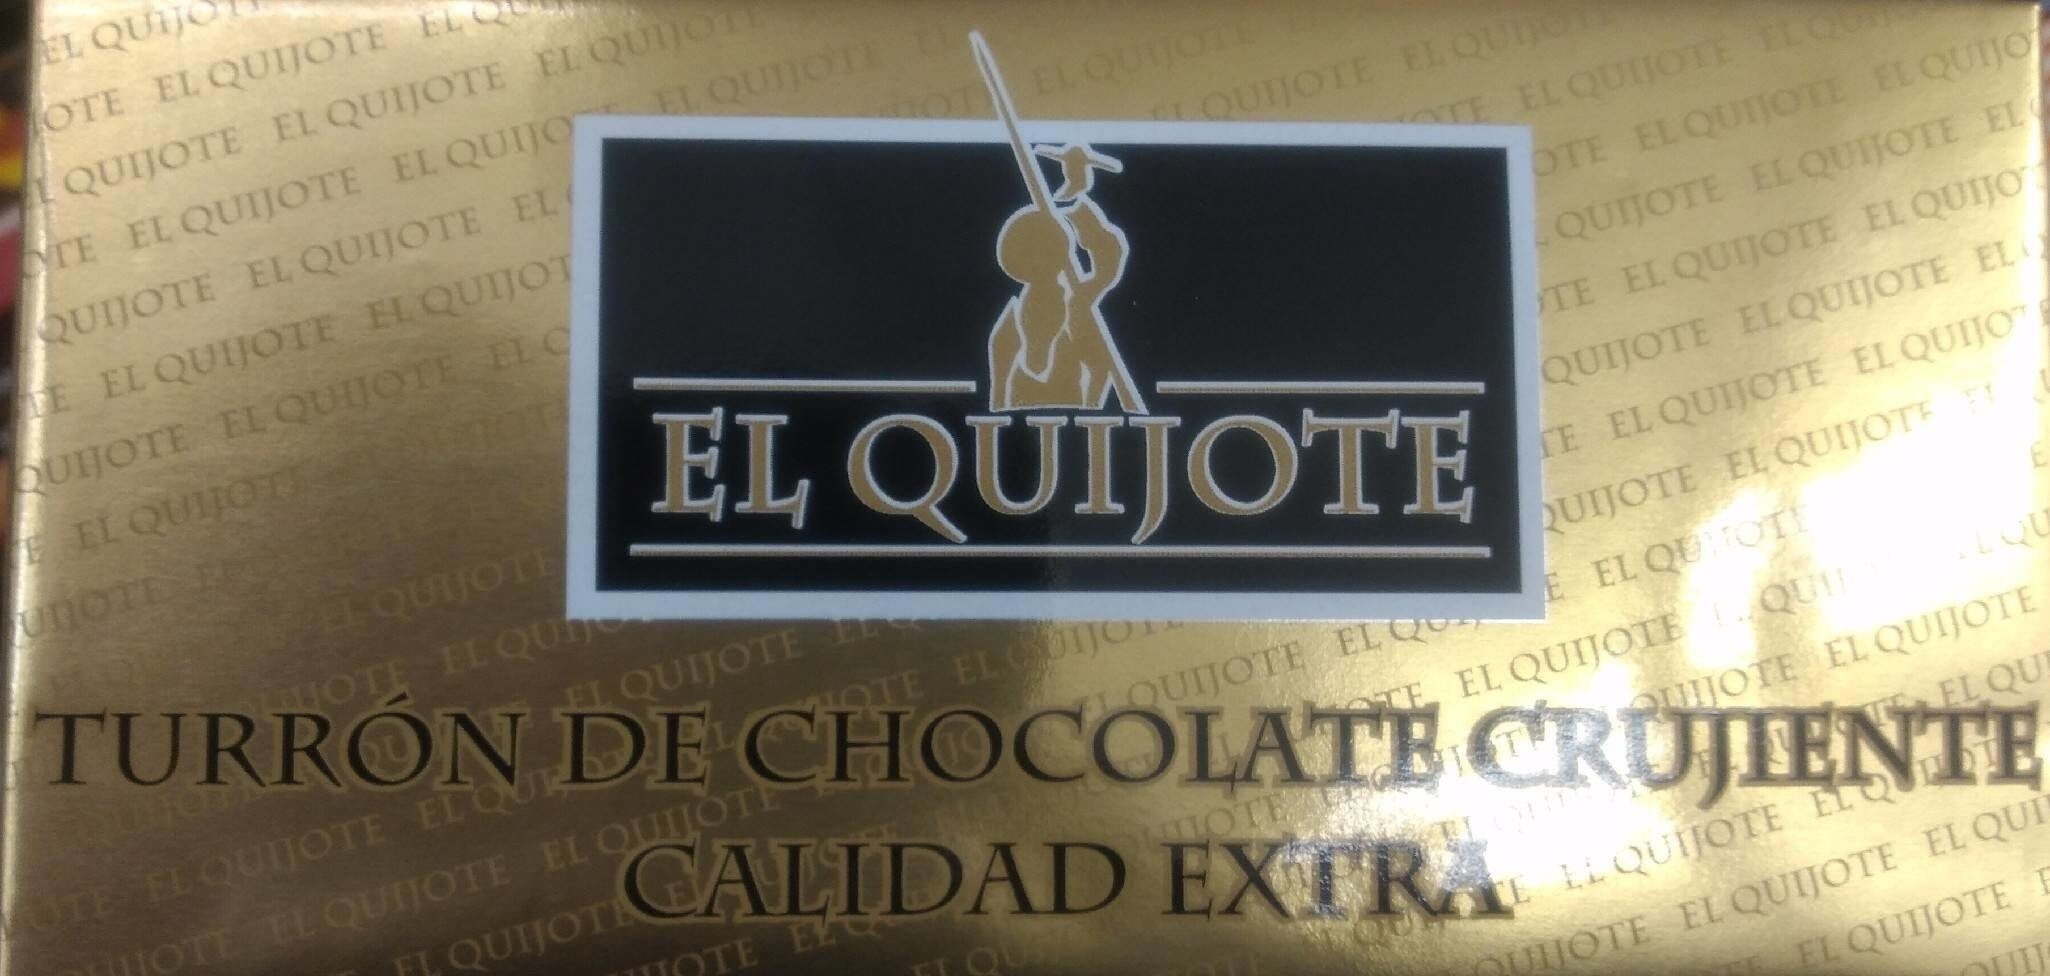 Turrón chocolate crujiente - Product - es